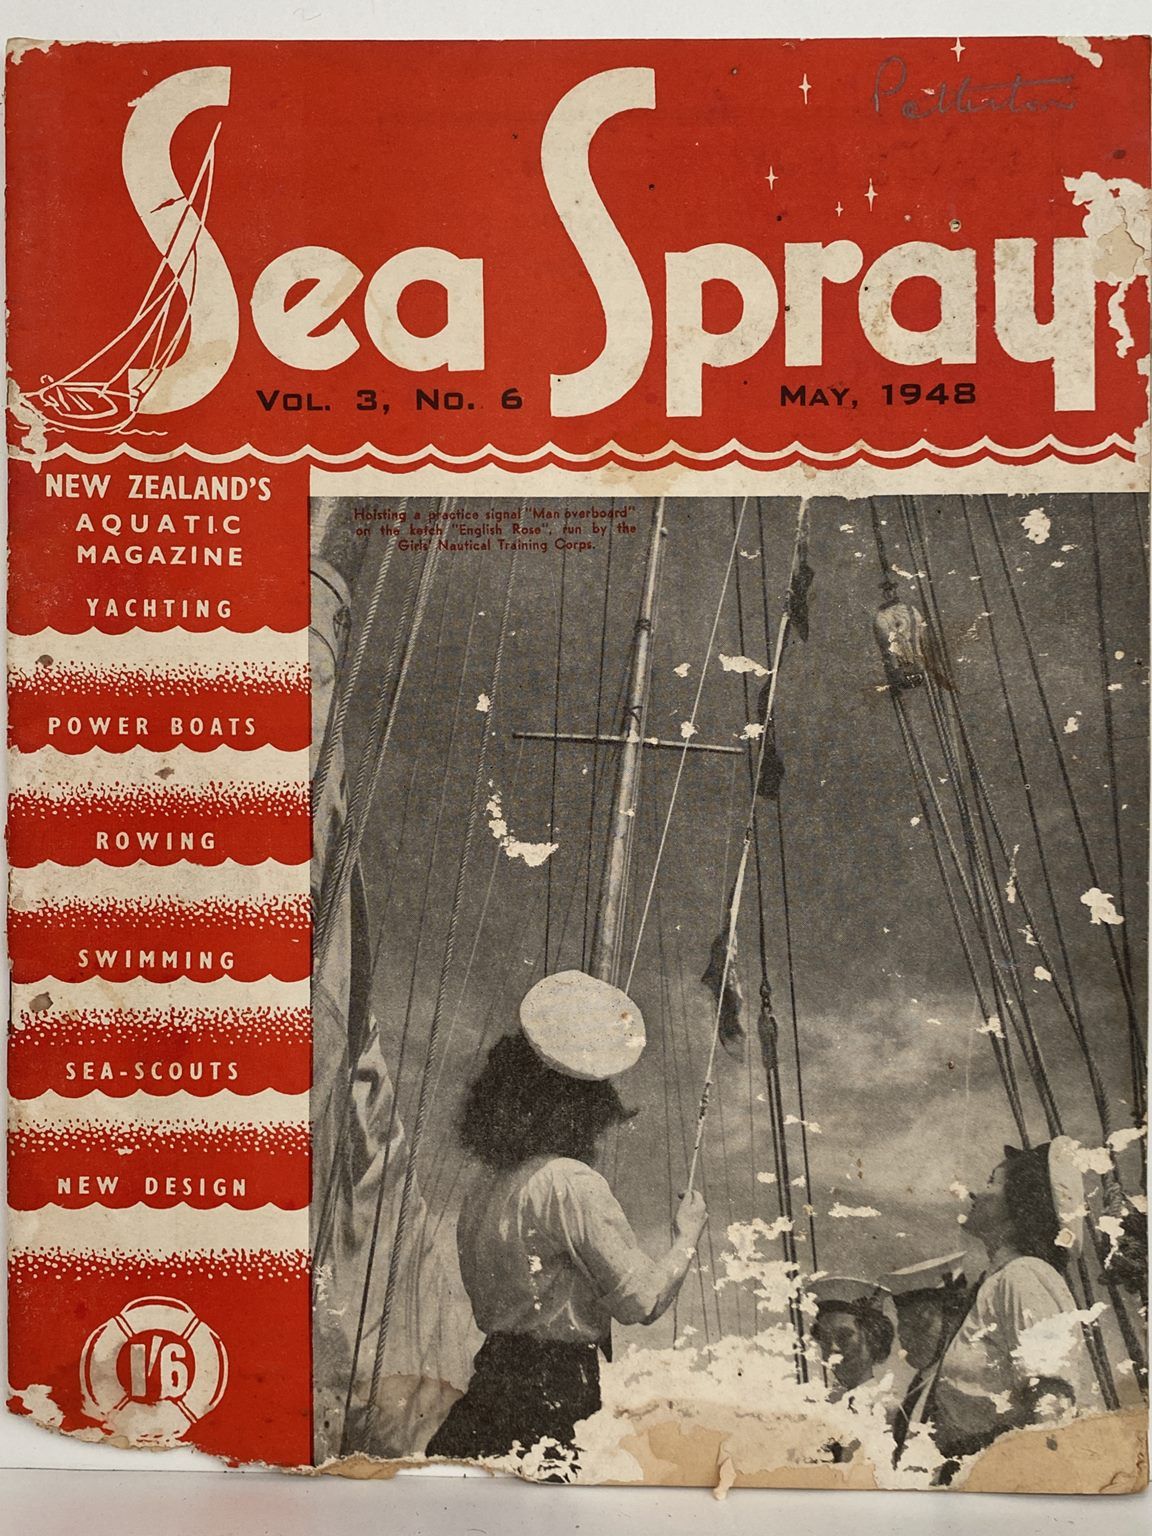 VINTAGE MAGAZINE: Sea Spray - Vol. 3, No. 6 - May 1948